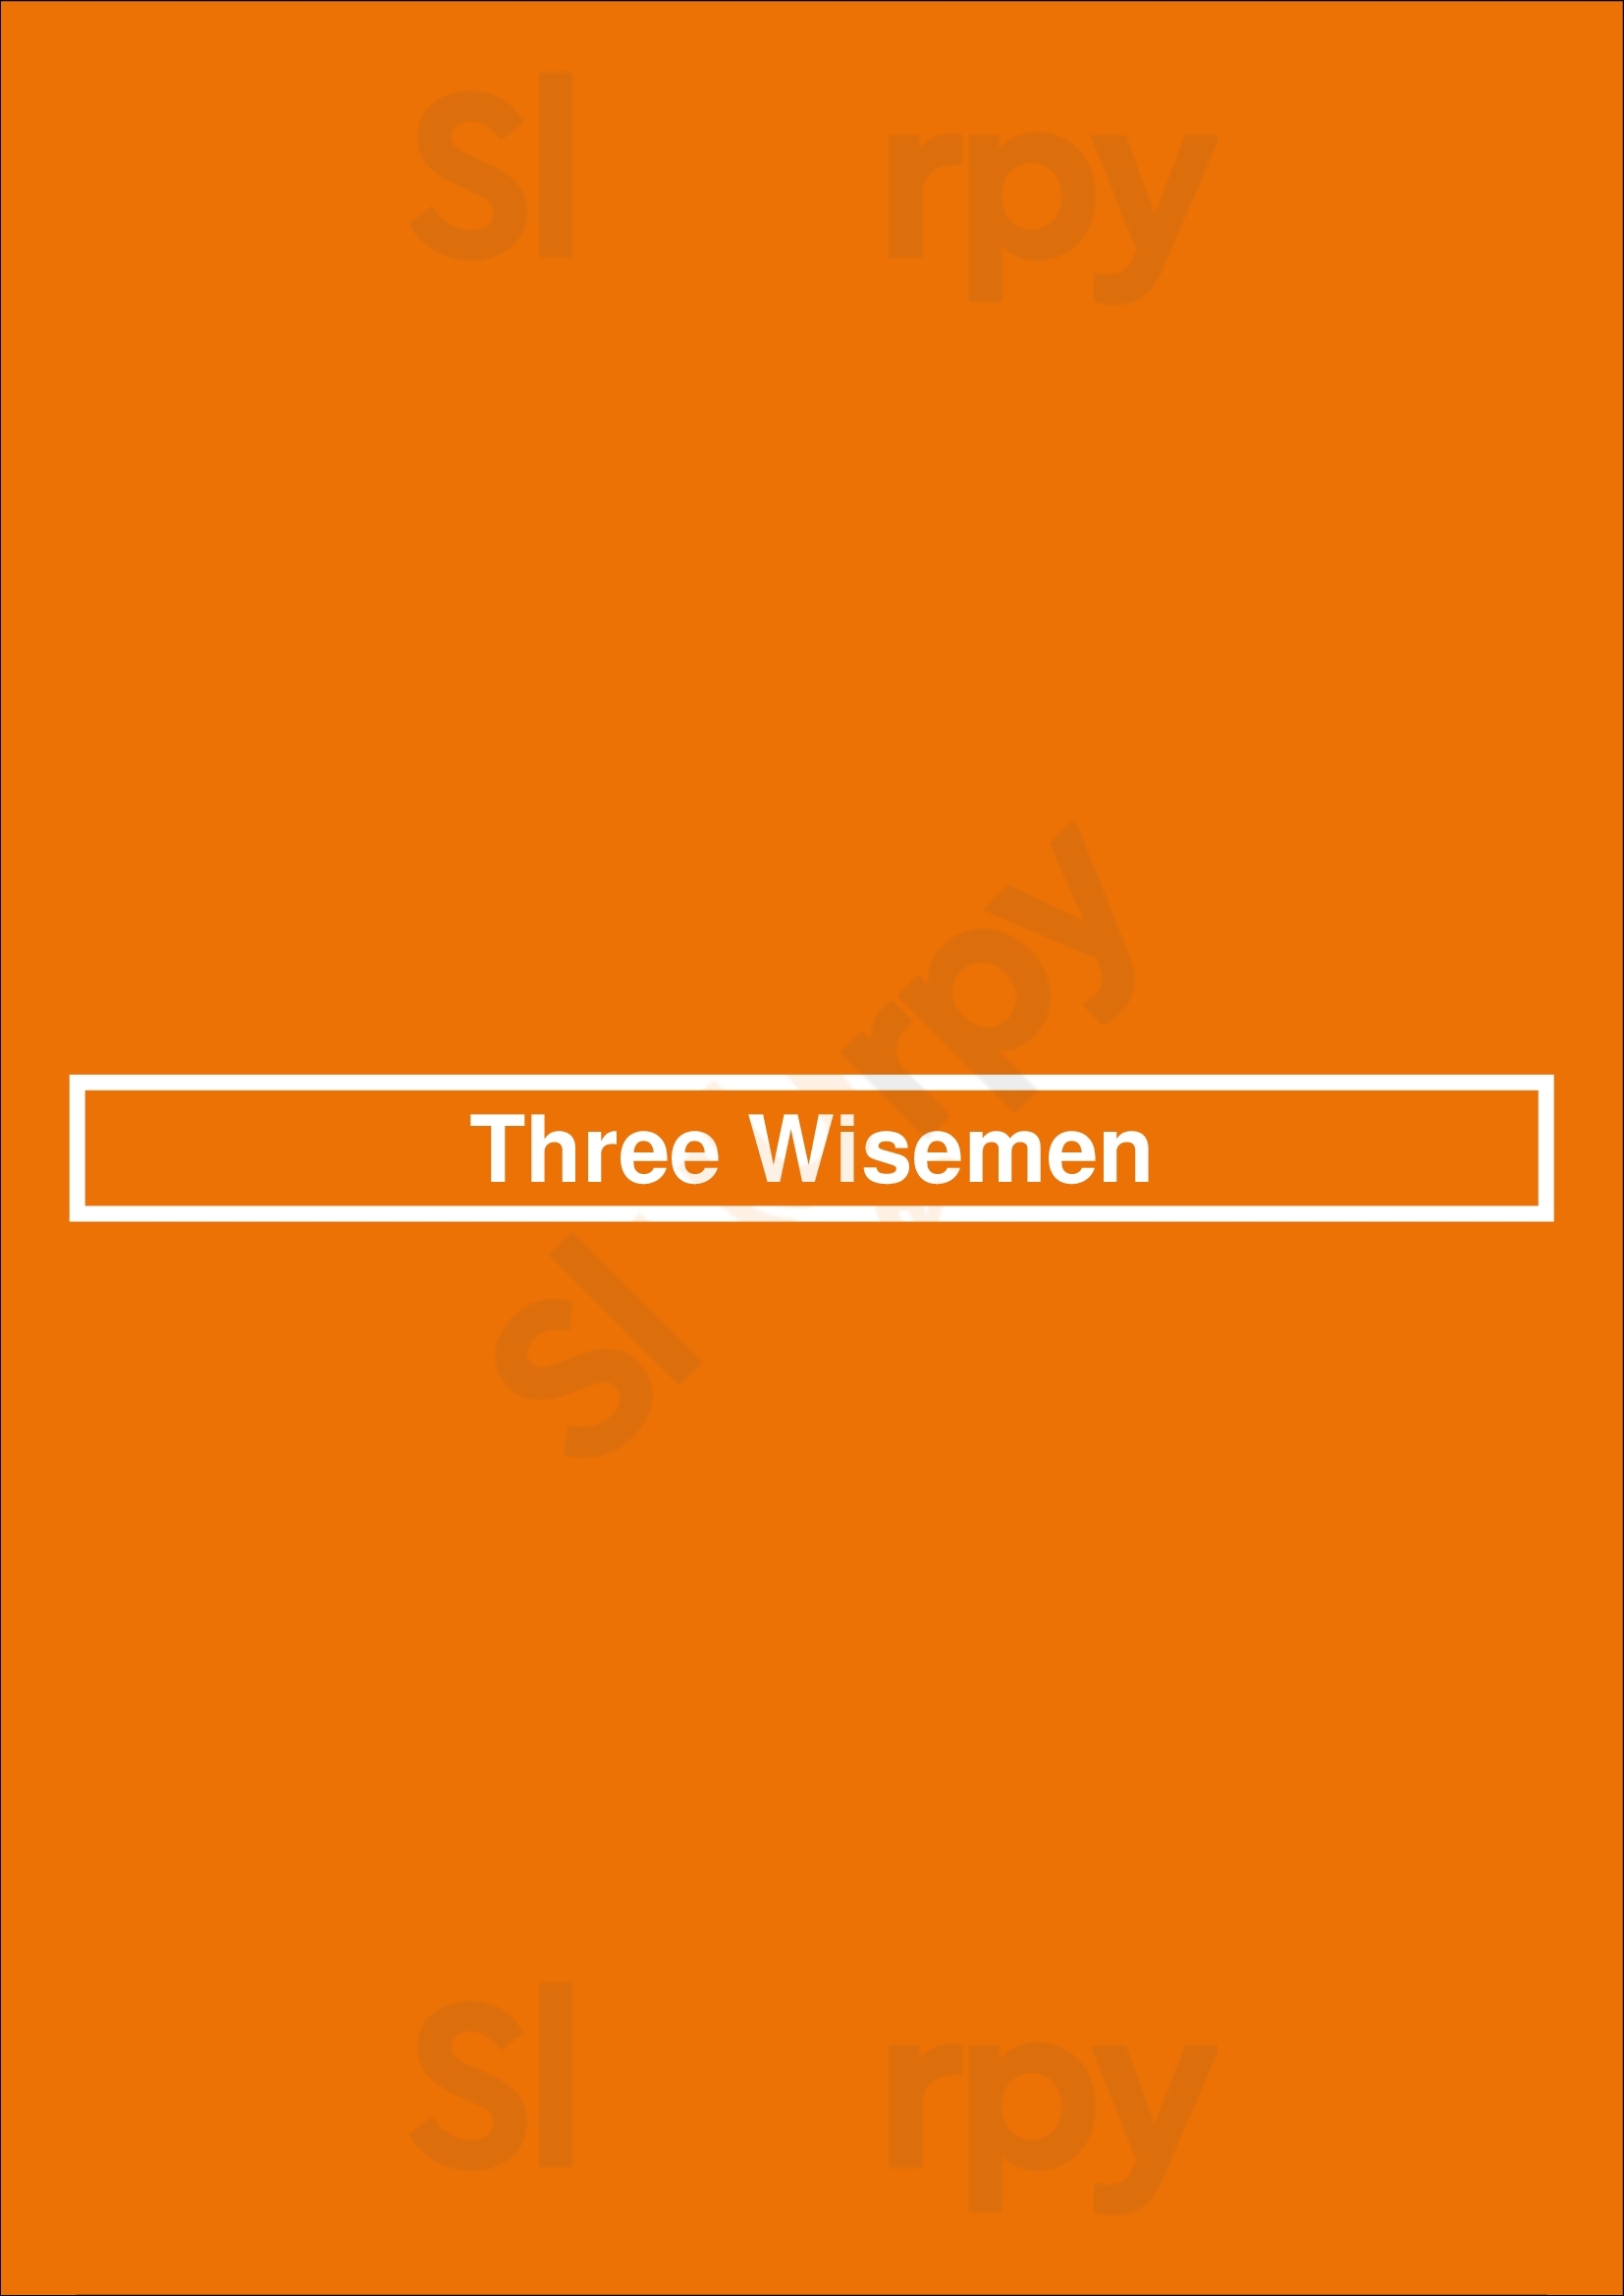 Three Wisemen Scottsdale Menu - 1